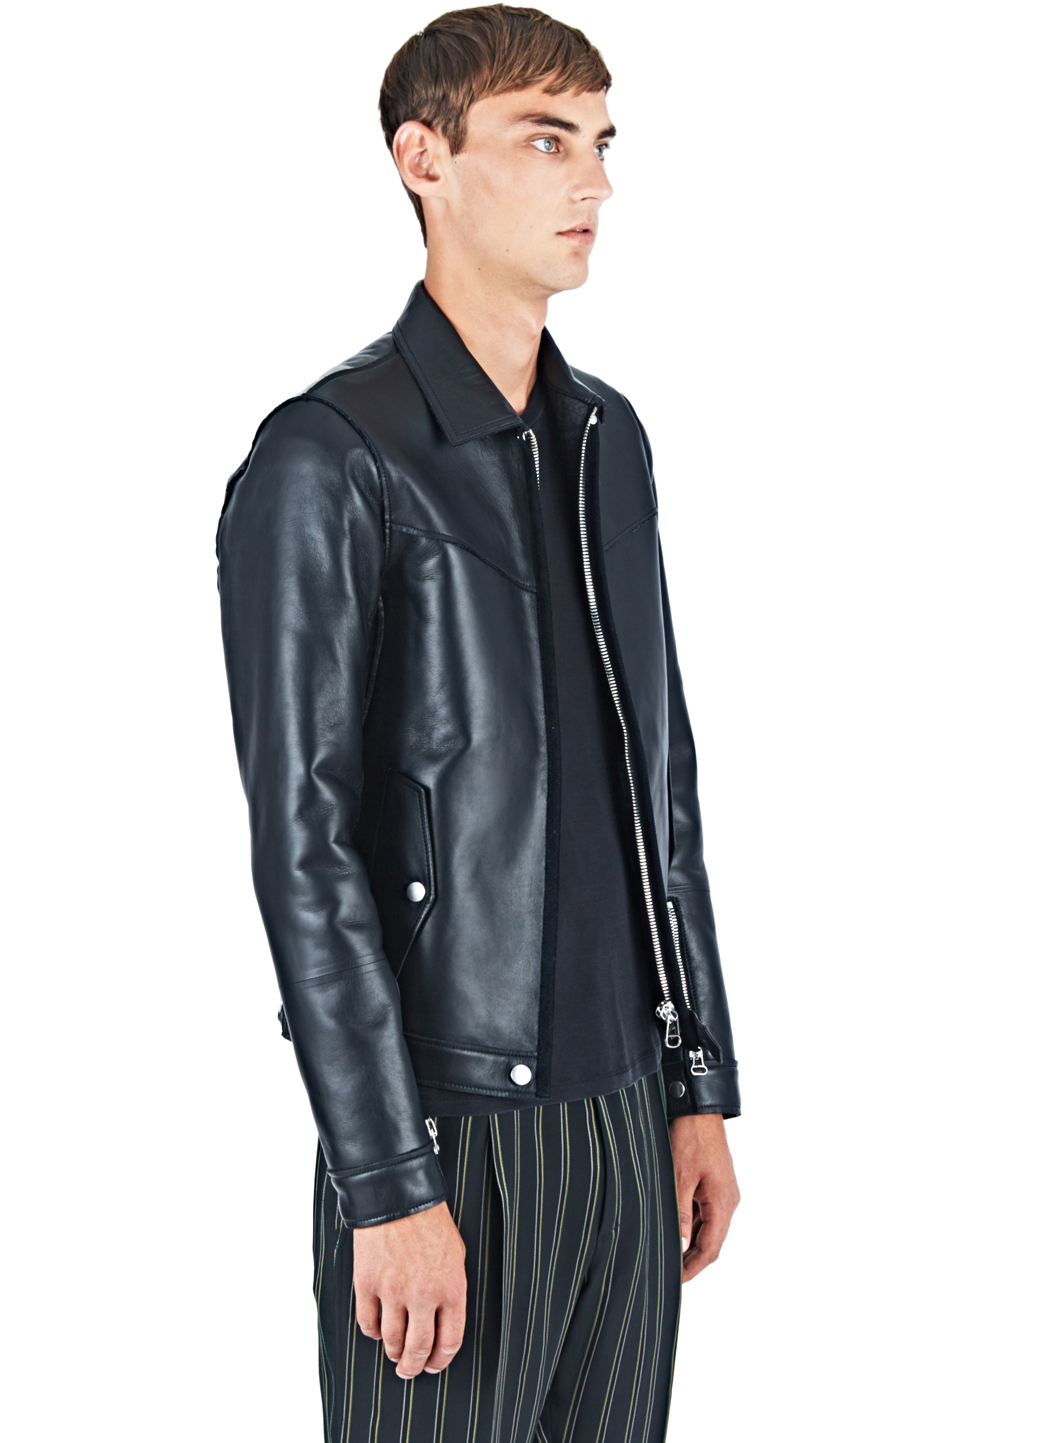 Lyst - Lanvin Leather Jacket in Black for Men